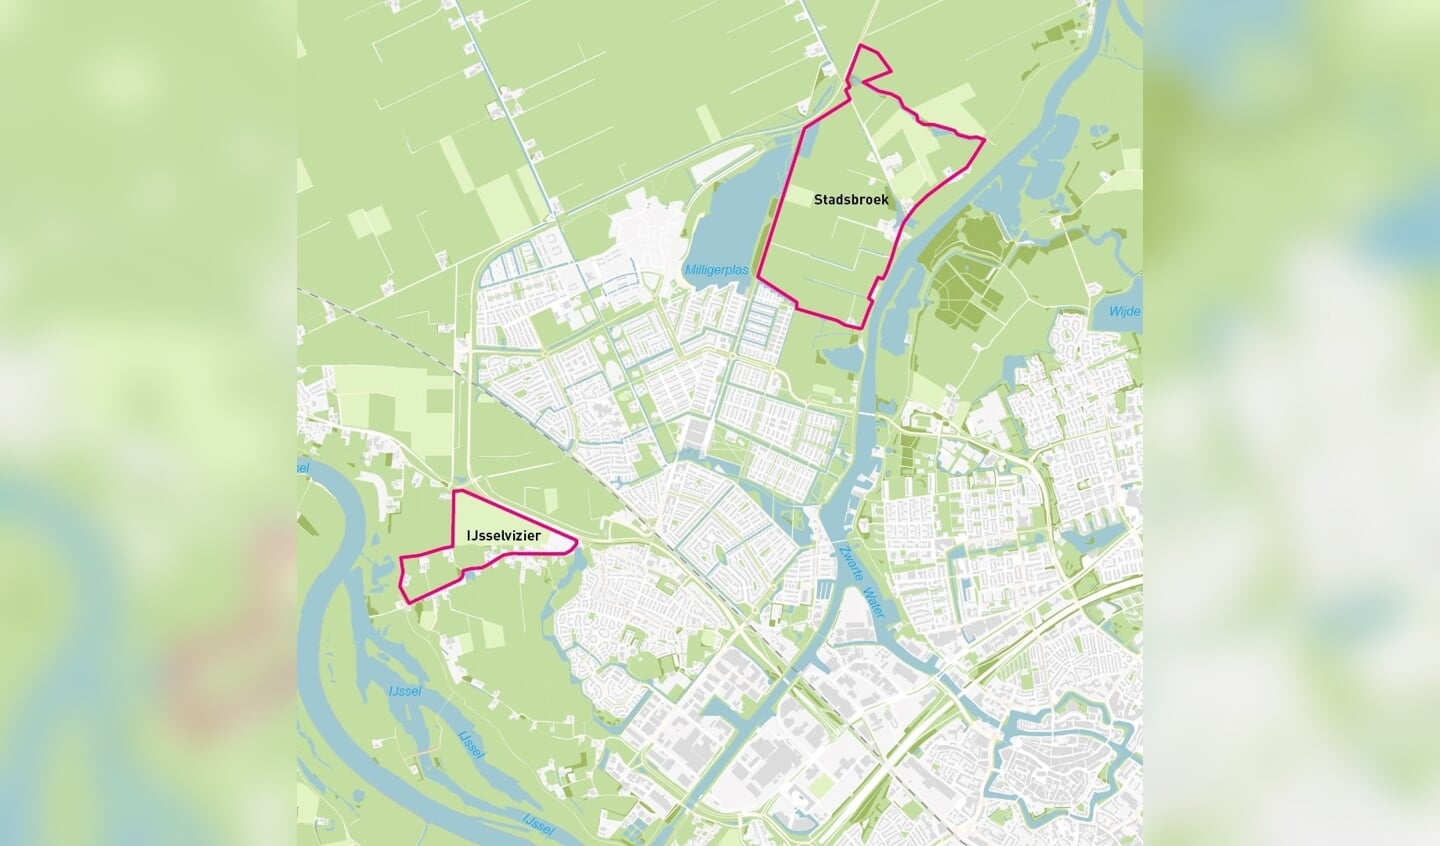 Locatiekaart waar de gebieden Stadsbroek en IJsselvizier op zijn aangegeven. Stadsbroek ligt boven de wijk Stadshagen. IJsselvizier ligt onder de wijk Stadshagen.